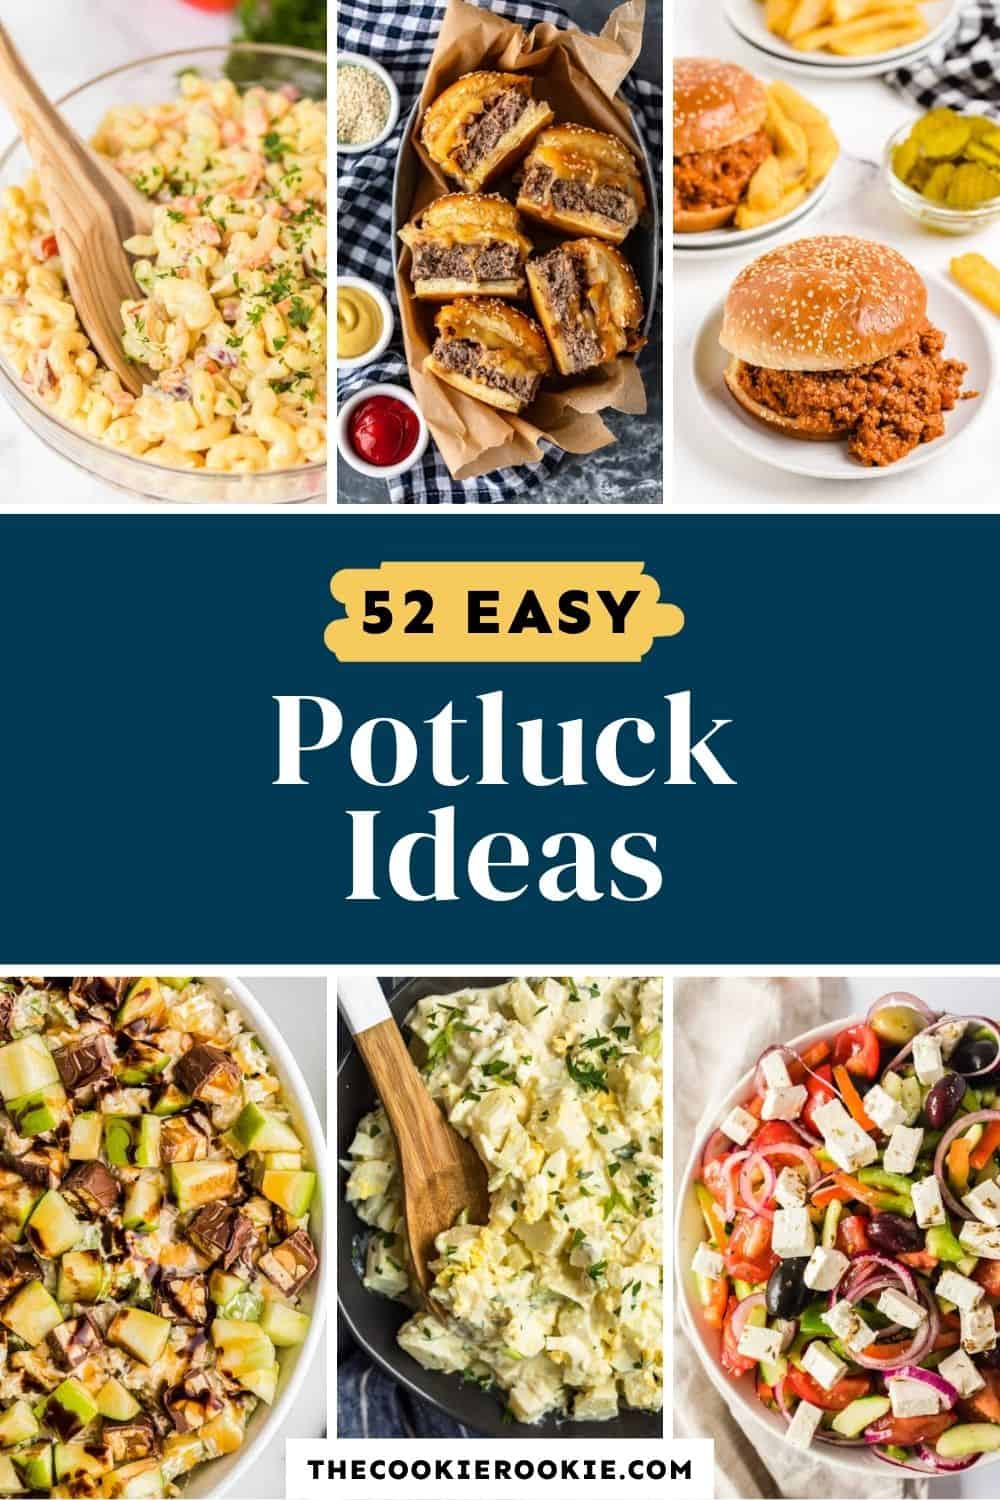 potluck food recipes